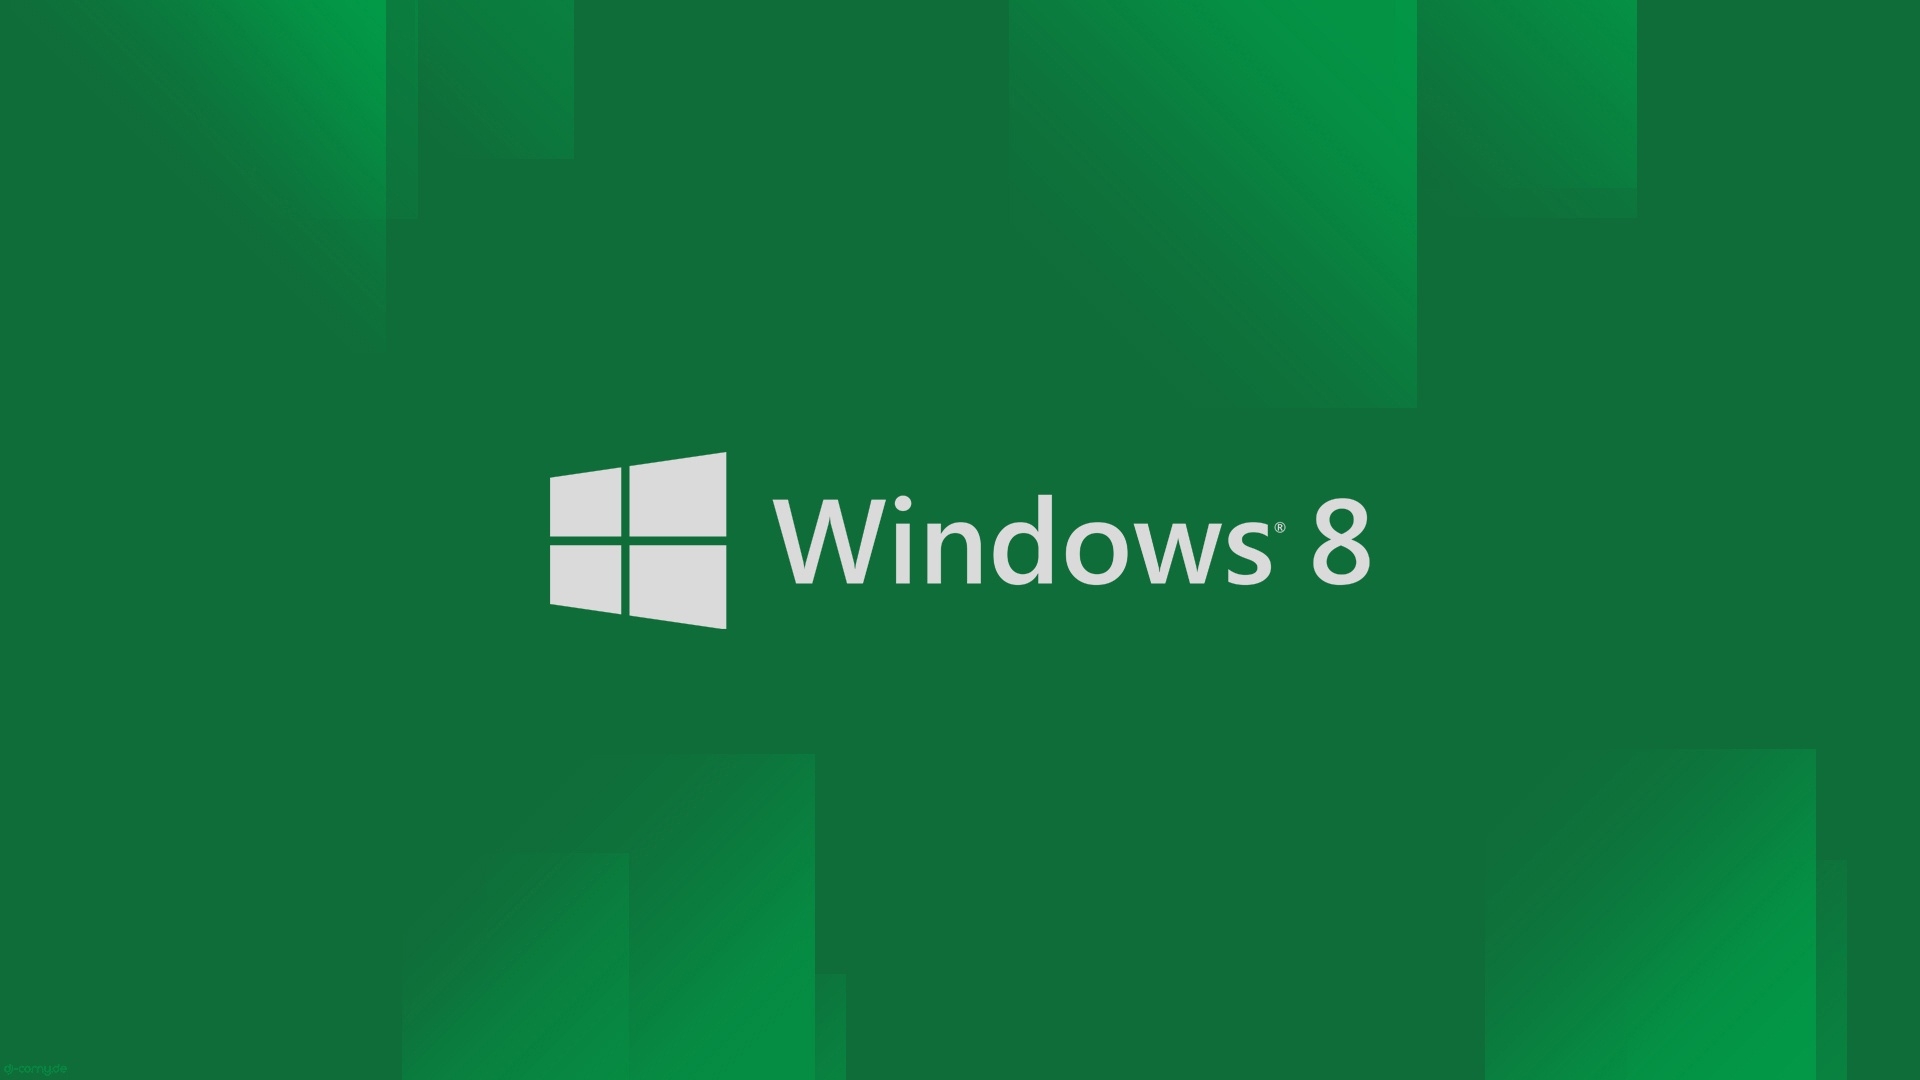 [48+] Windows 10 HD Wallpapers 1080p | WallpaperSafari.com